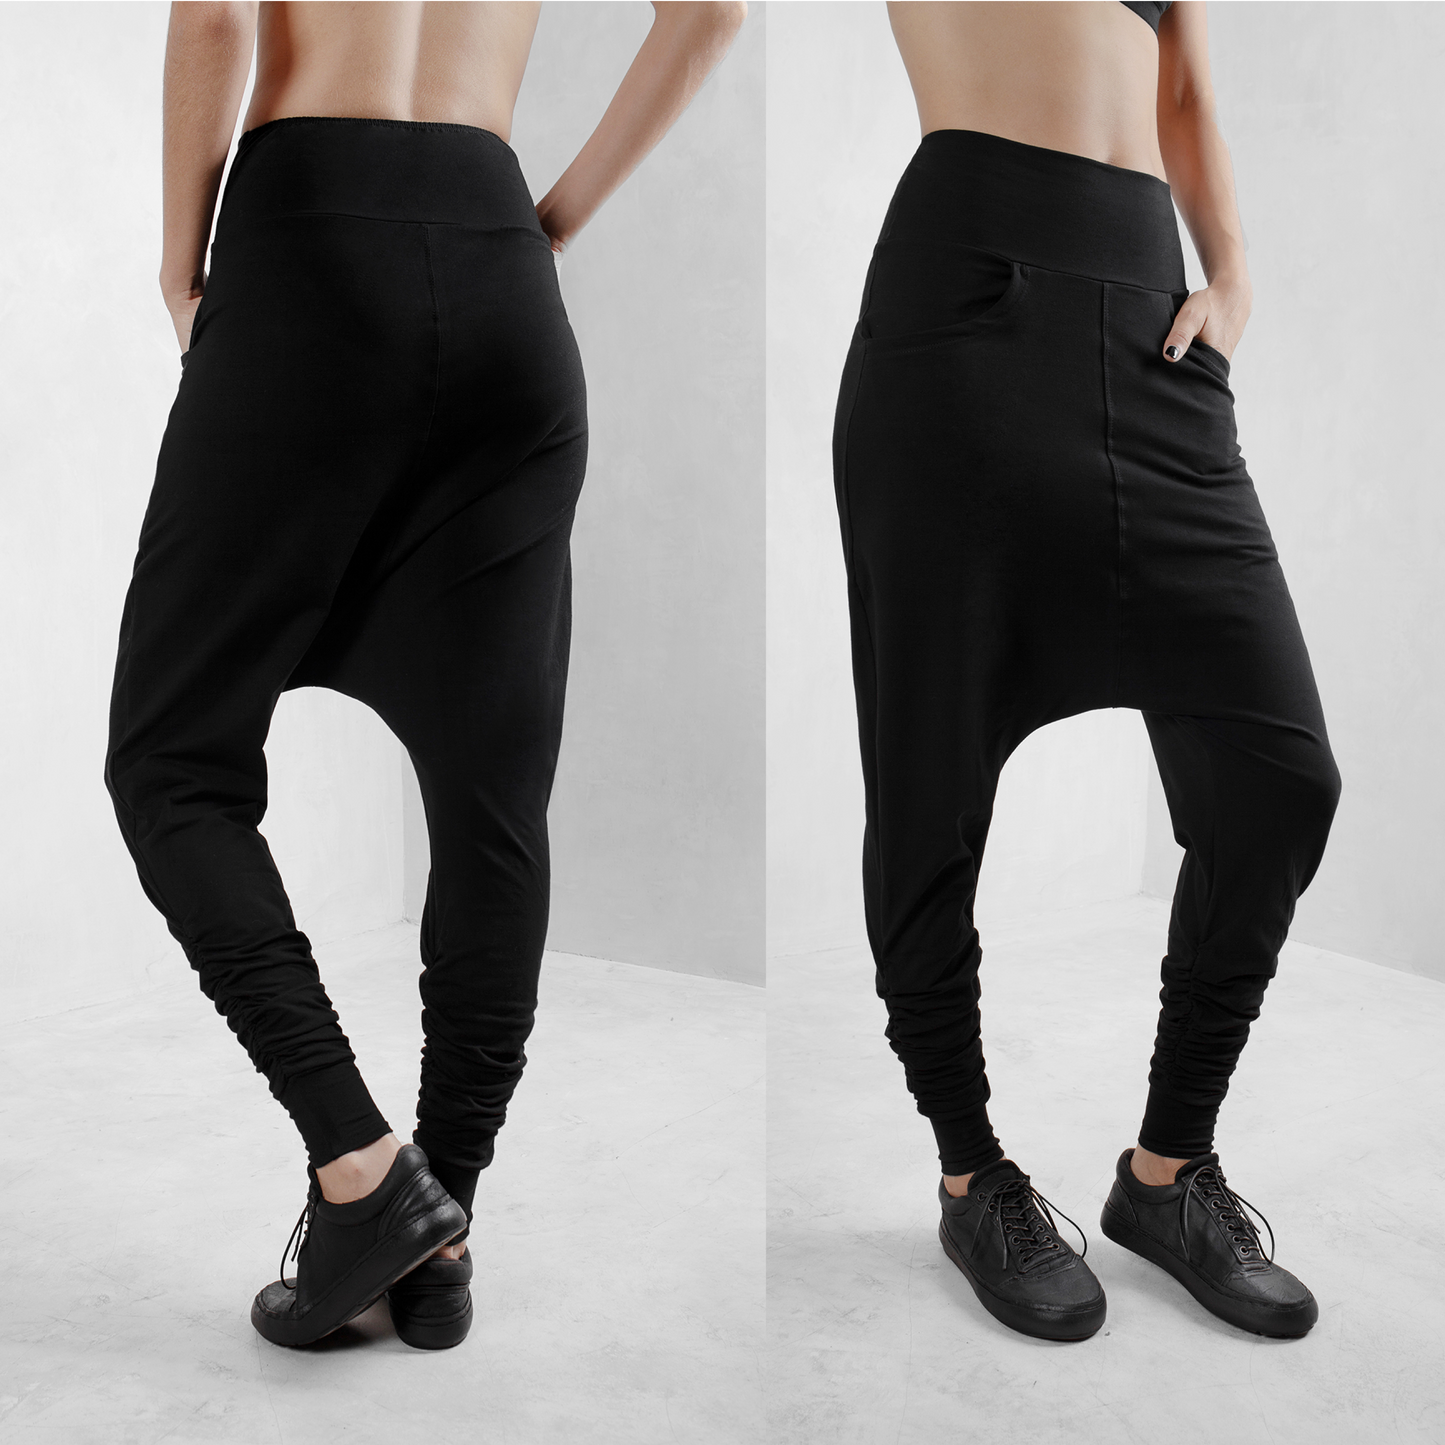 Black low crotch pants